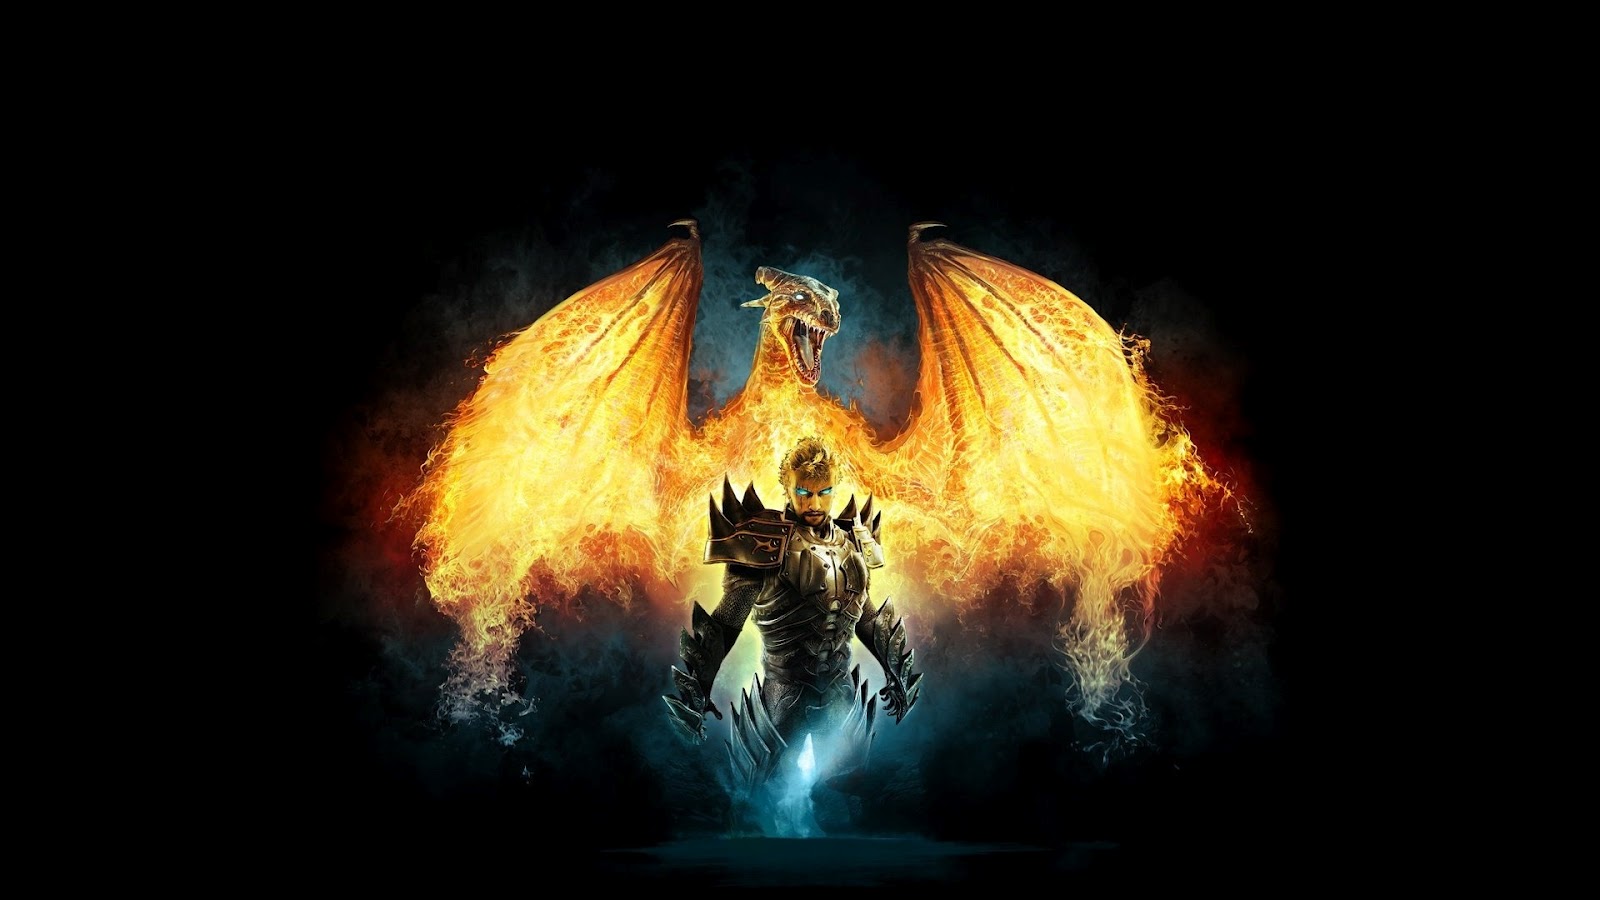 dragon fondos de pantalla hd 1080p,fuego,oscuridad,demonio,fuego,cg artwork